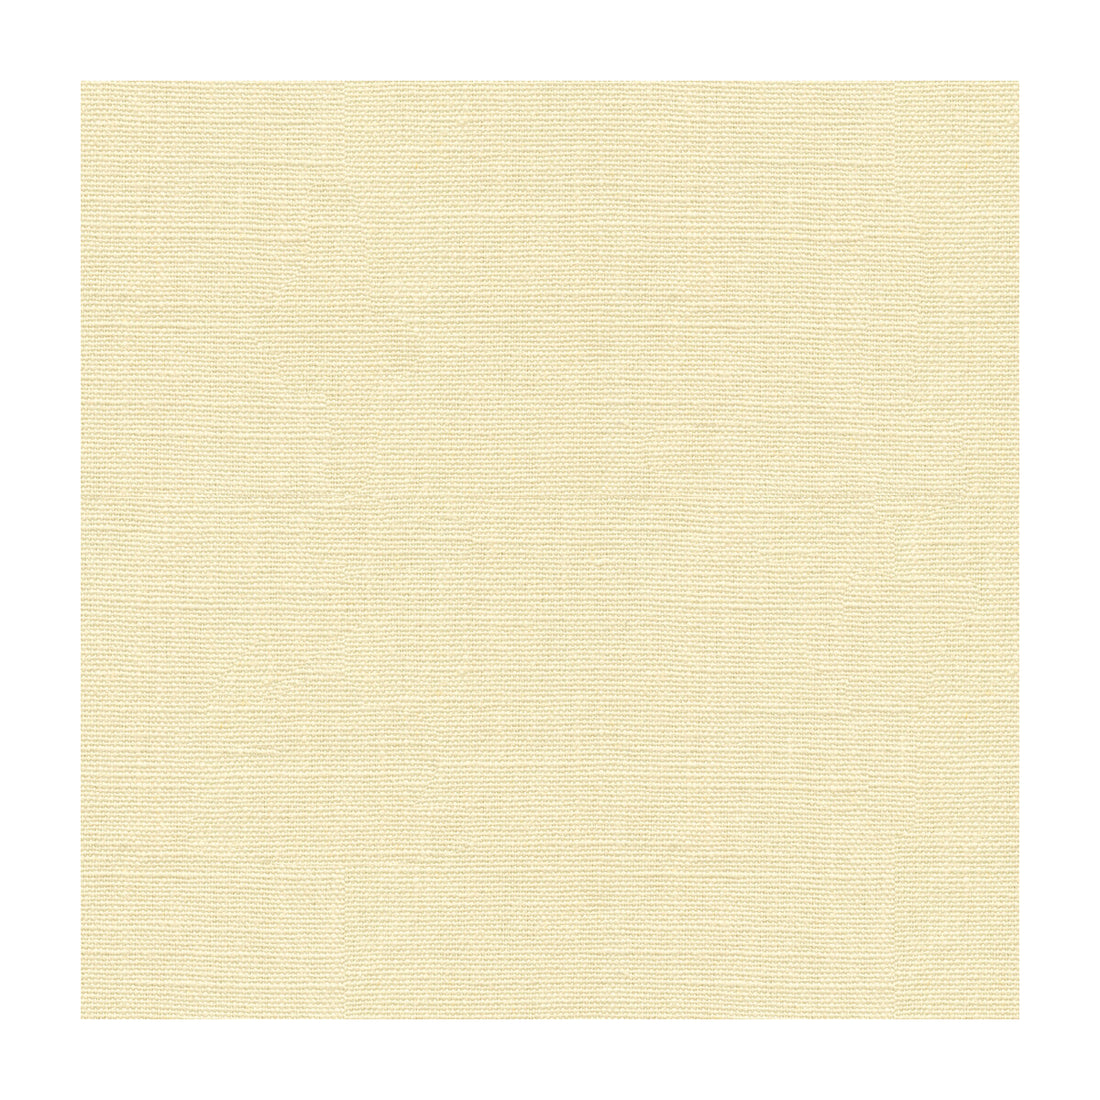 Kravet Basics fabric in 33771-1 color - pattern 33771.1.0 - by Kravet Basics